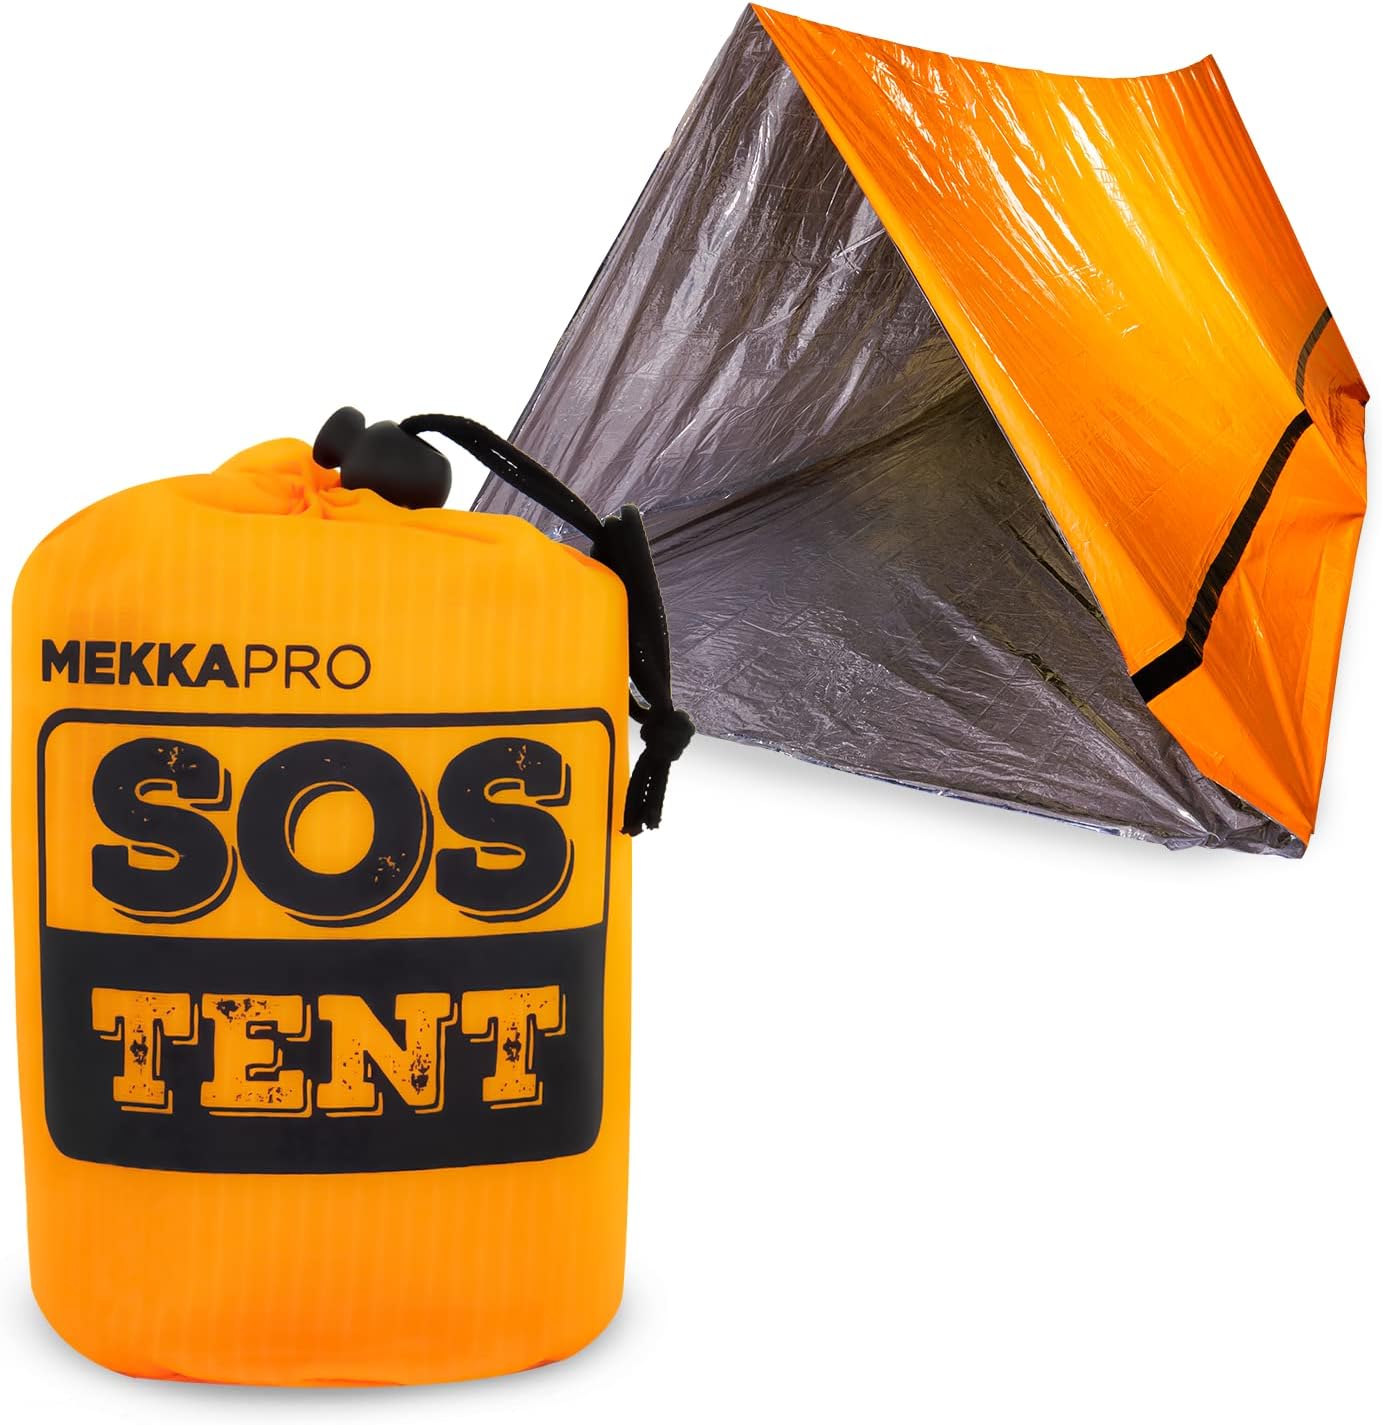 MEKKAPRO Emergency Tent Shelter Review